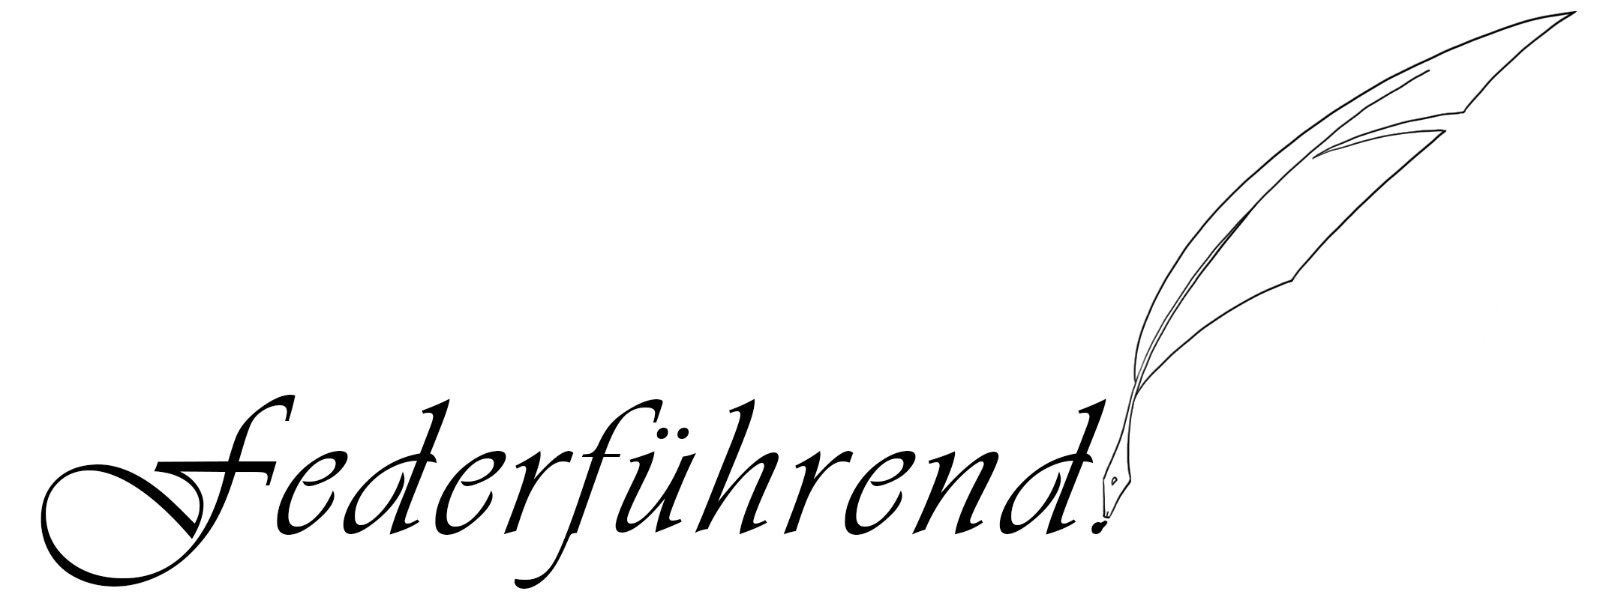 federfuehrend_header